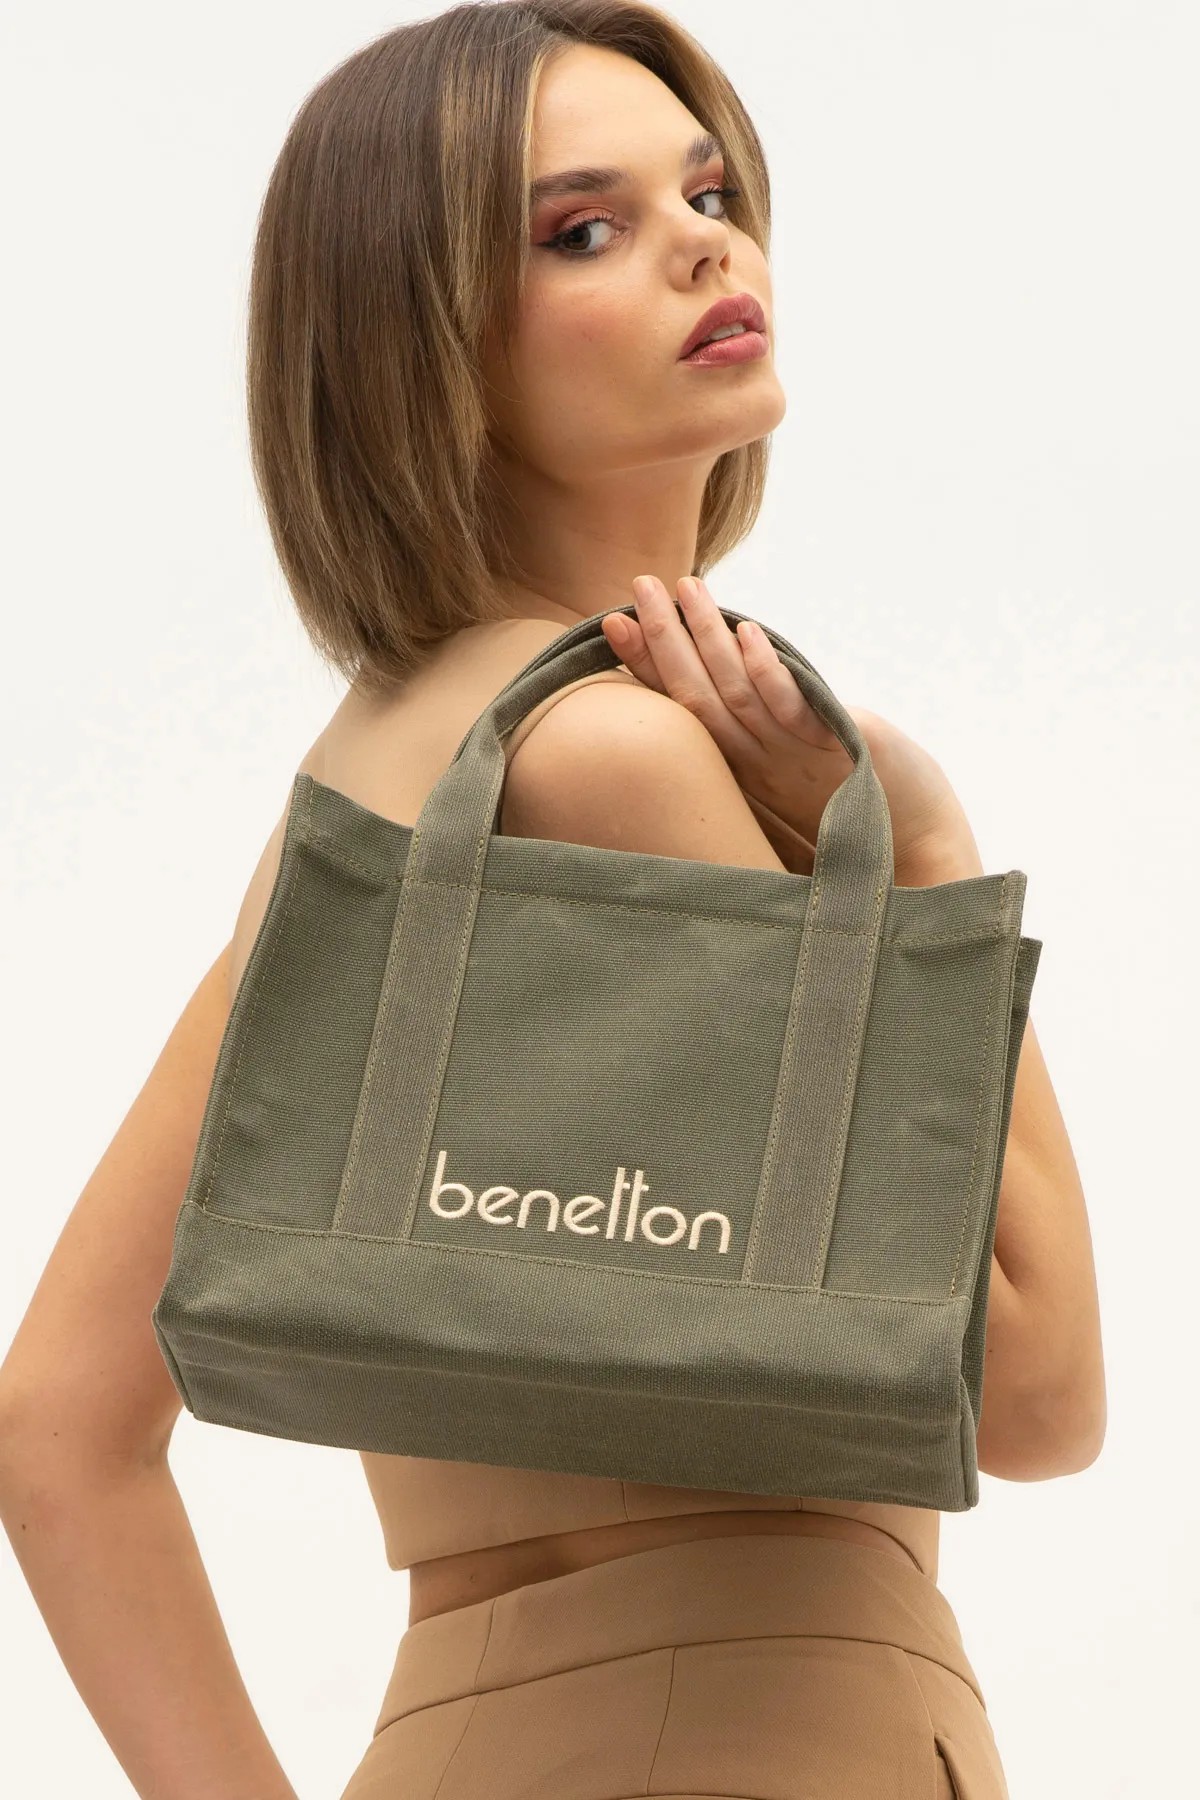 Benetton Kadın El Çantası - Haki